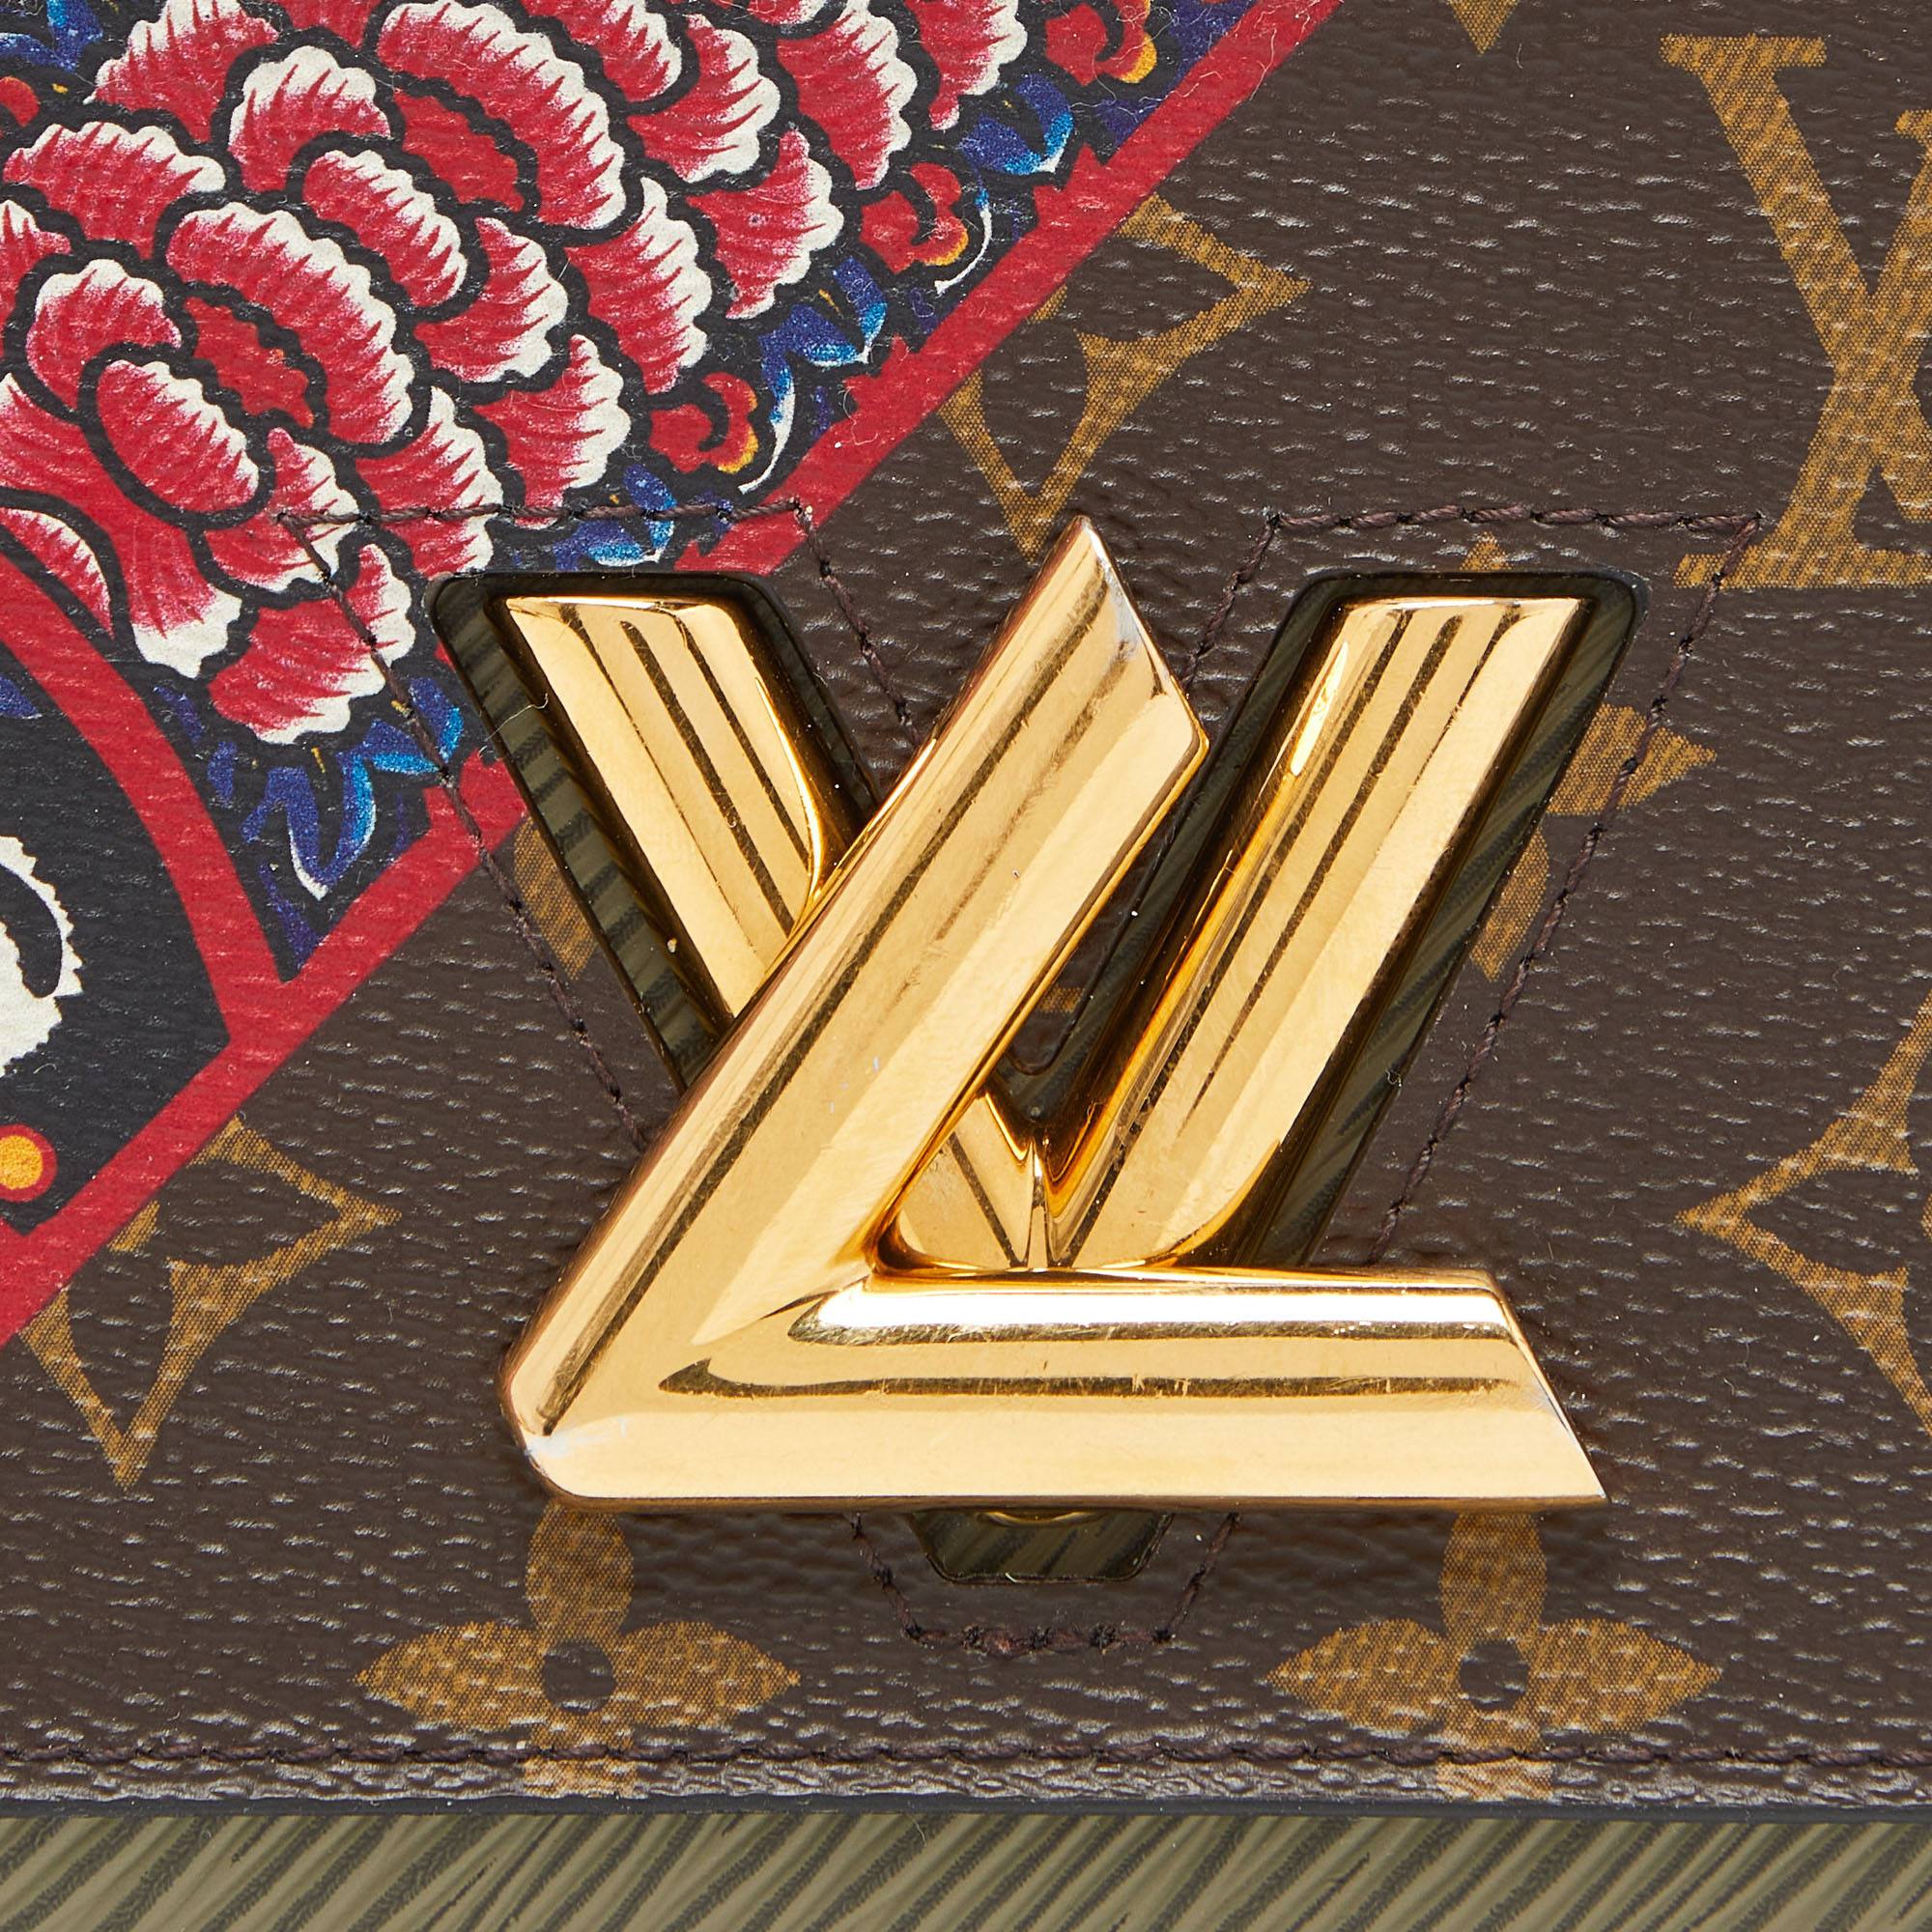 Louis Vuitton Monogram Canvas And Epi Leather Kabuki Twist Wallet